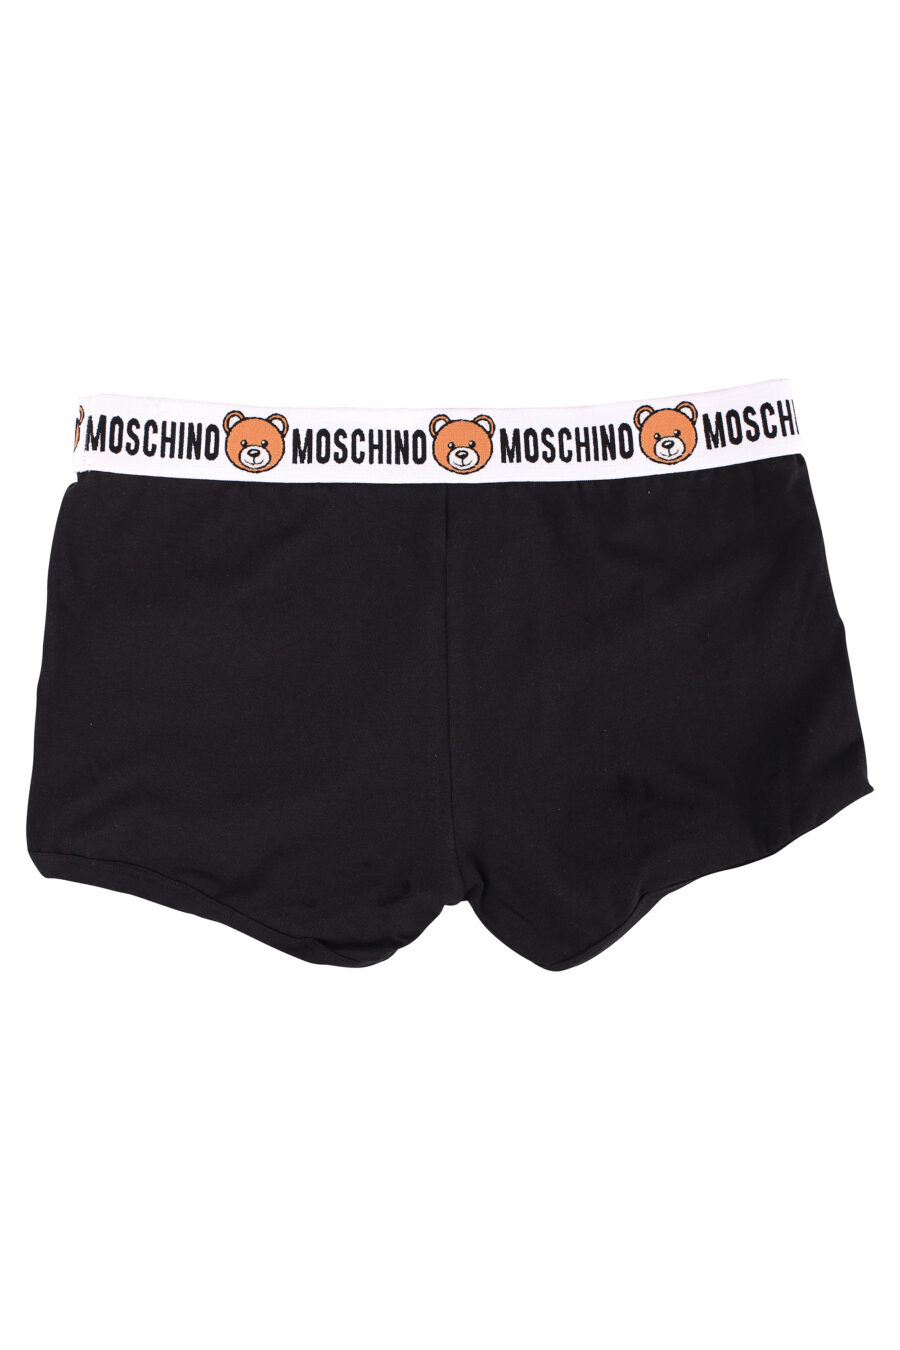 Pack de dos boxers negros con logo oso "underbear" - IMG 6636